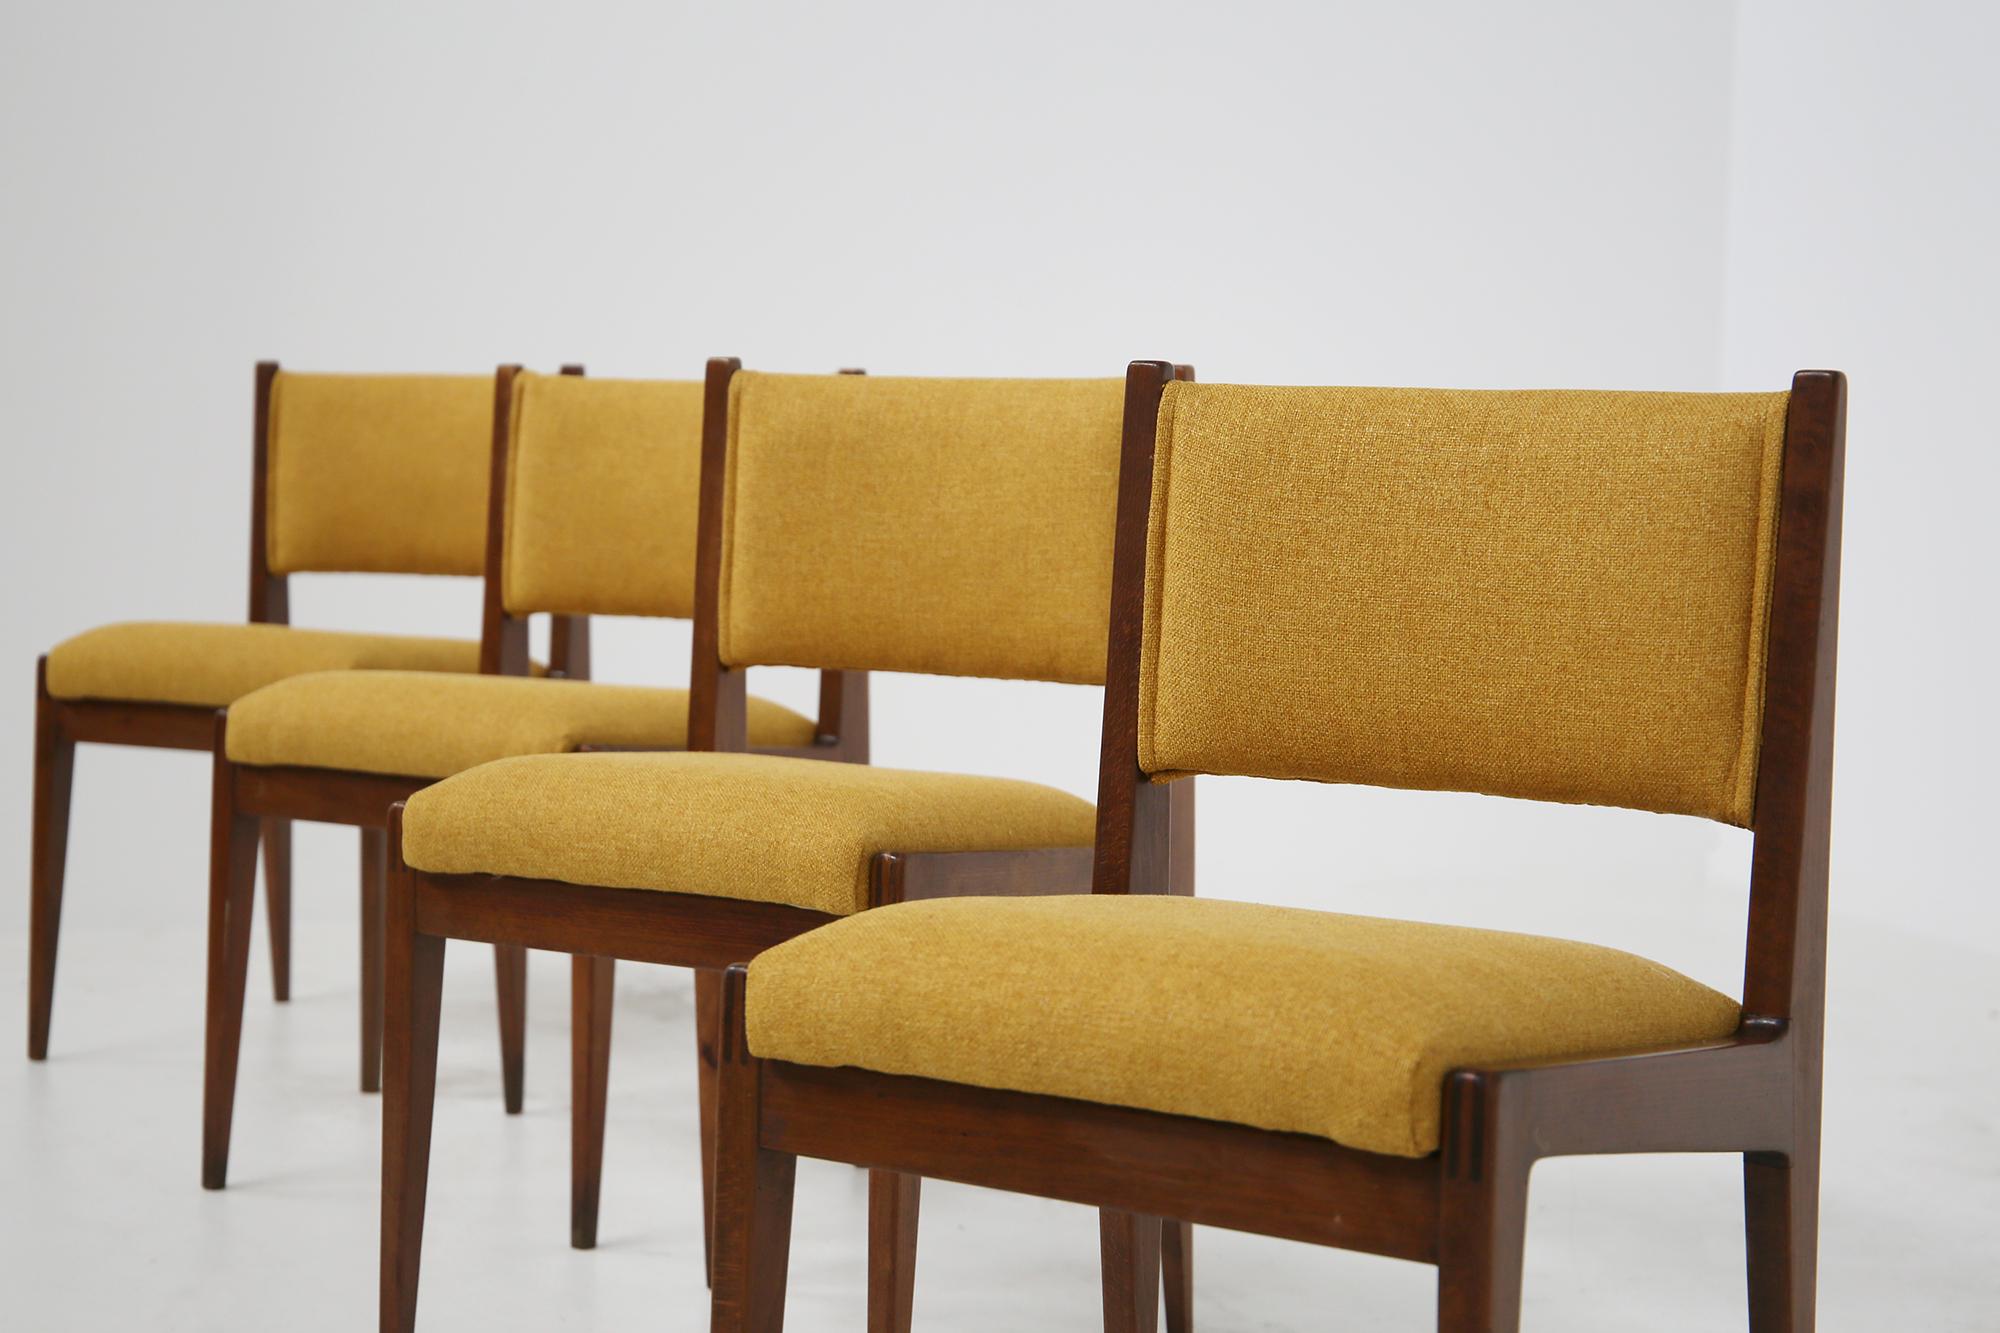 Set aus vier gelben Stühlen von Gianfranco Frattini für Bottega Ghianda, 1960er Jahre (Italienisch)